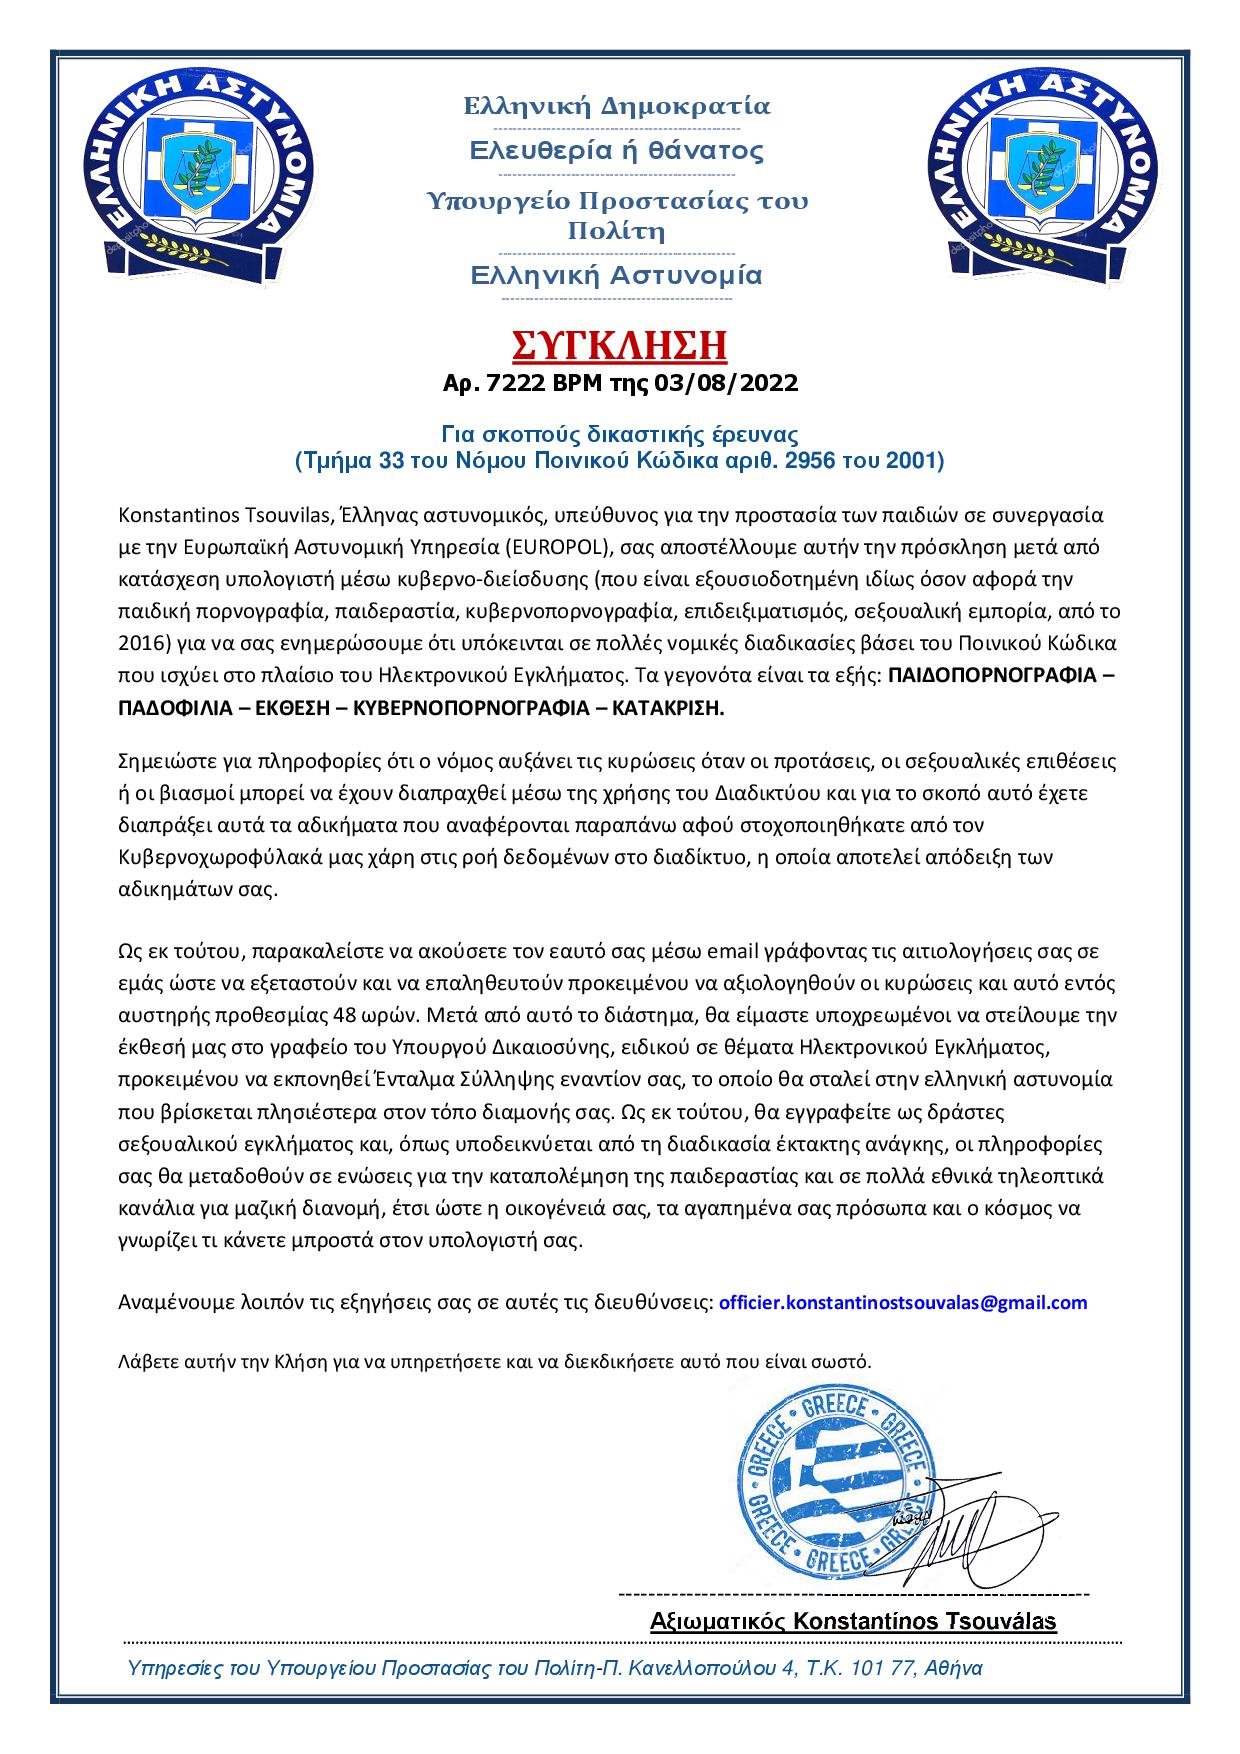 الشرطة اليونانية تحذر - الشرطة اليونانية تحذر.. المواطنين من عمليات الاحتيال الإلكترونية عبر - البريد الإلكتروني